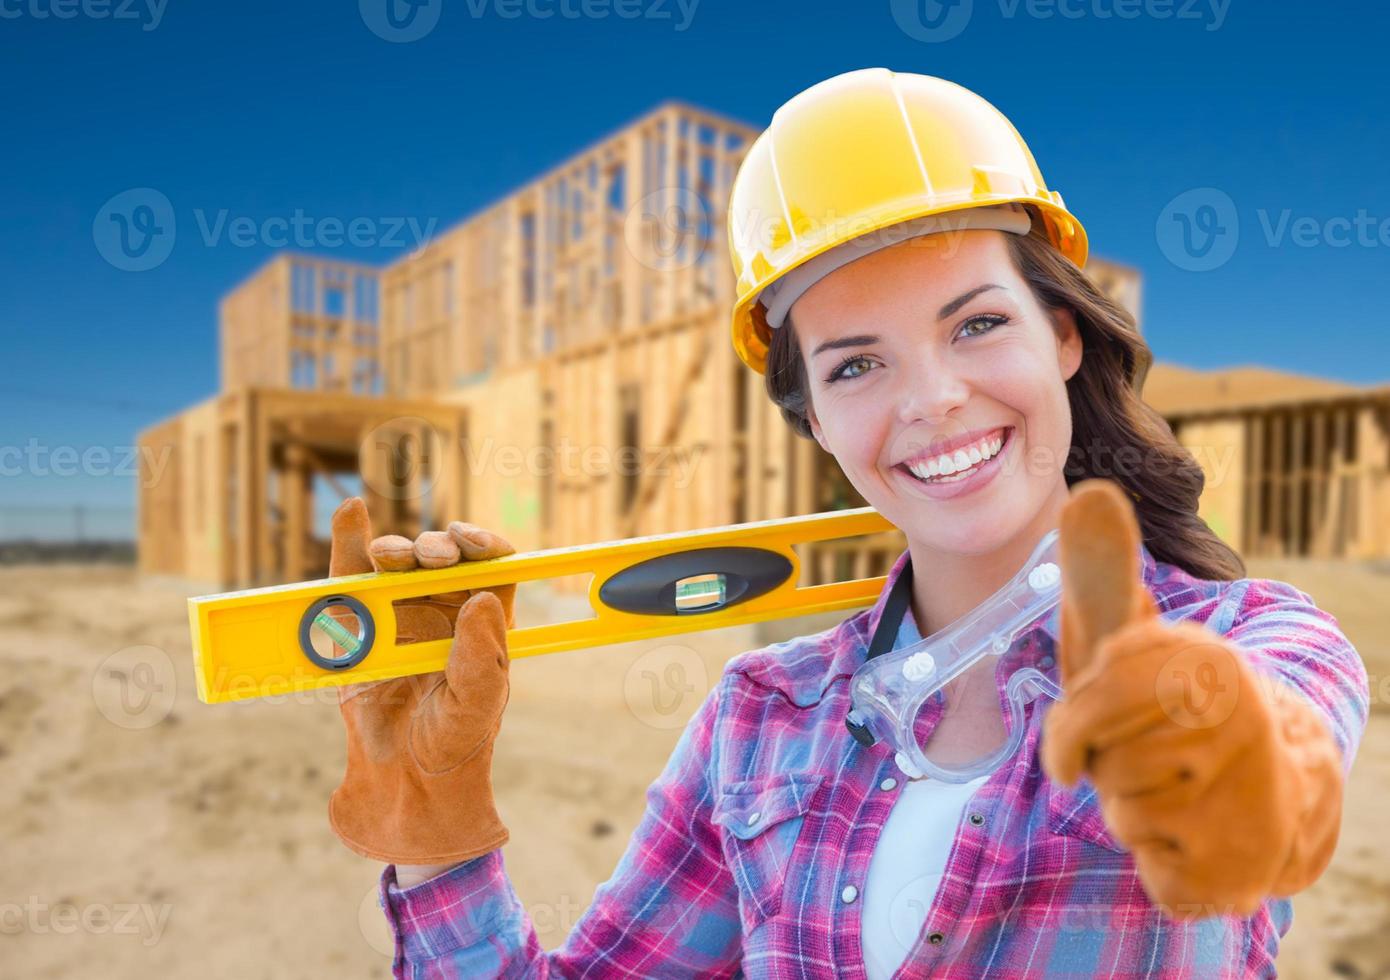 trabalhador da construção civil feminino com polegares para cima segurando nível usando luvas, capacete e óculos de proteção no canteiro de obras foto